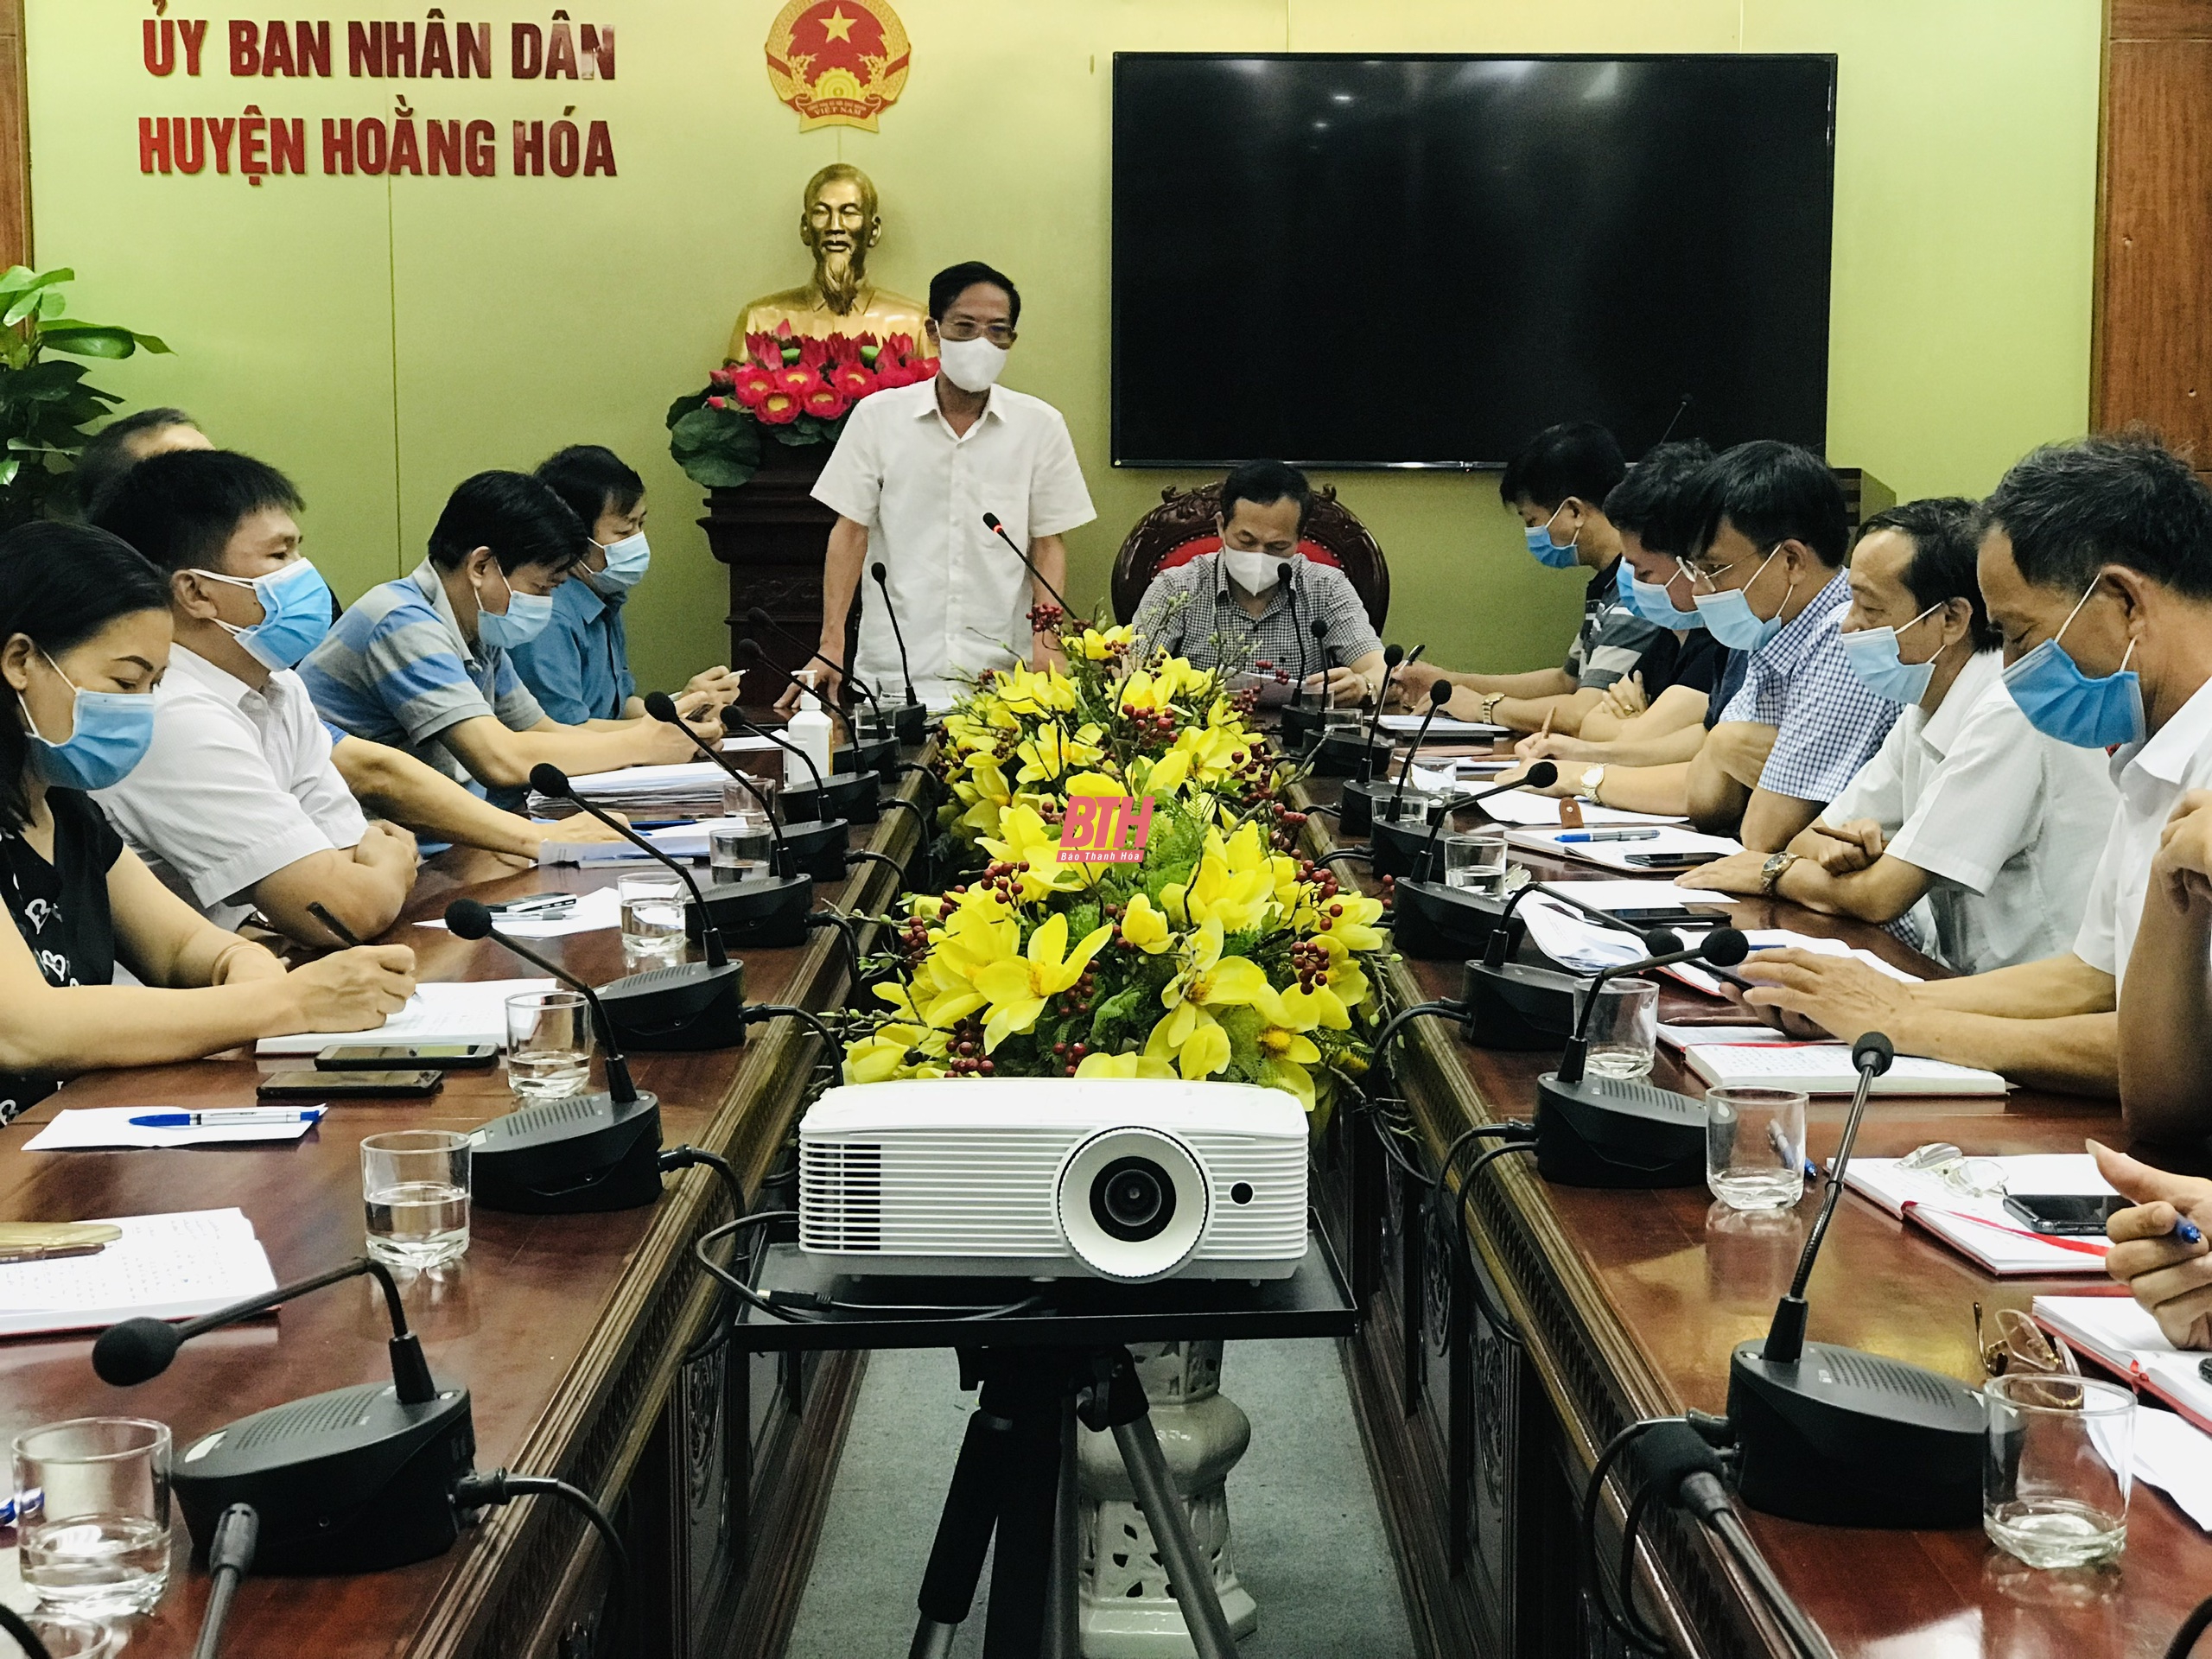 Phó Chủ tịch UBND tỉnh Đầu Thanh Tùng chỉ đạo công tác phòng chống dịch COVID-19 tại Hoằng Hoá